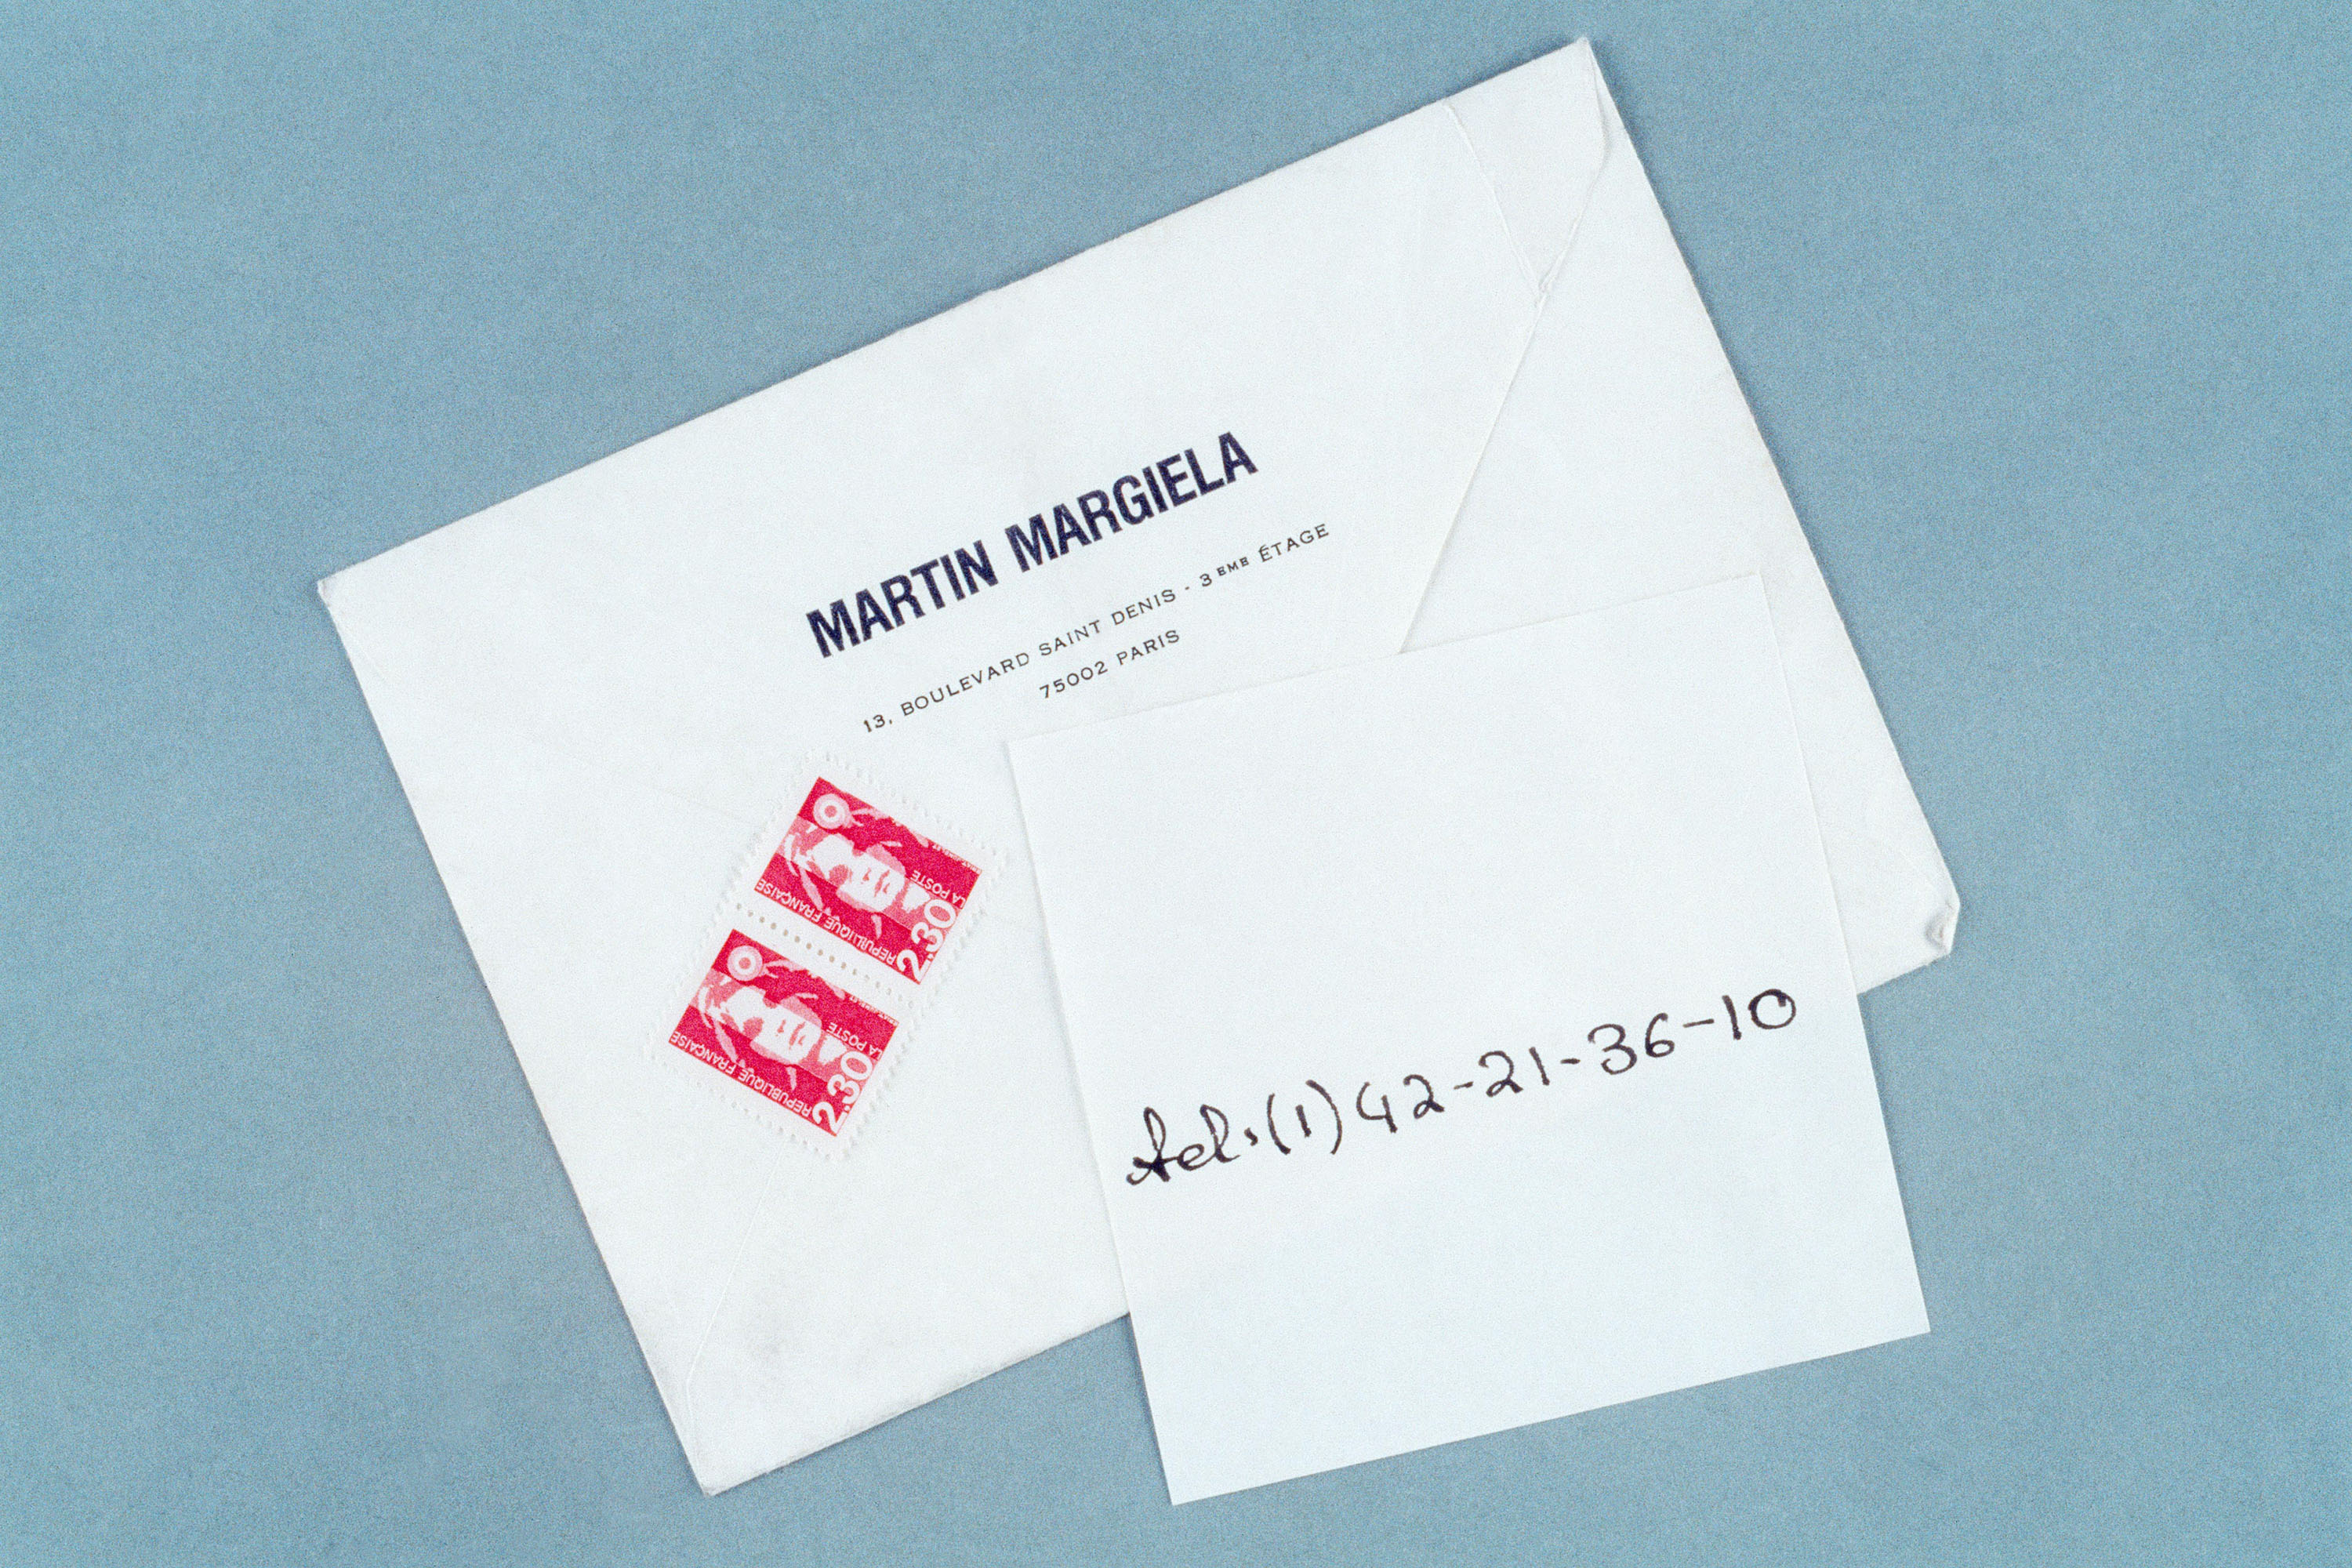 Maison Martin Margiela 1994 S/S invitation